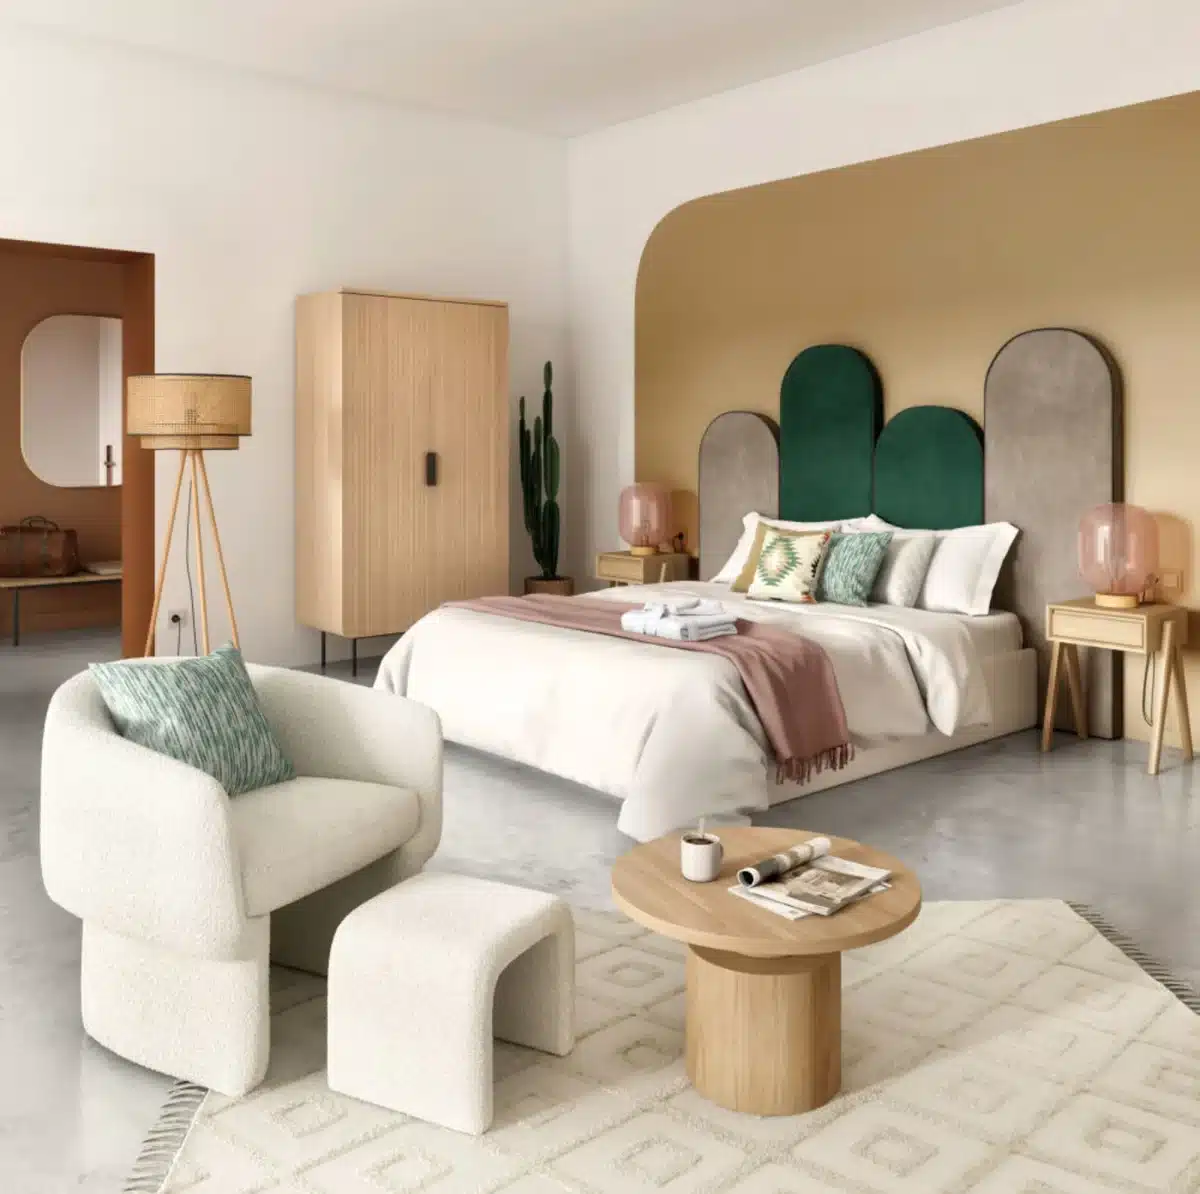 Une chambre colorée et apaisante avec une tete de lit design